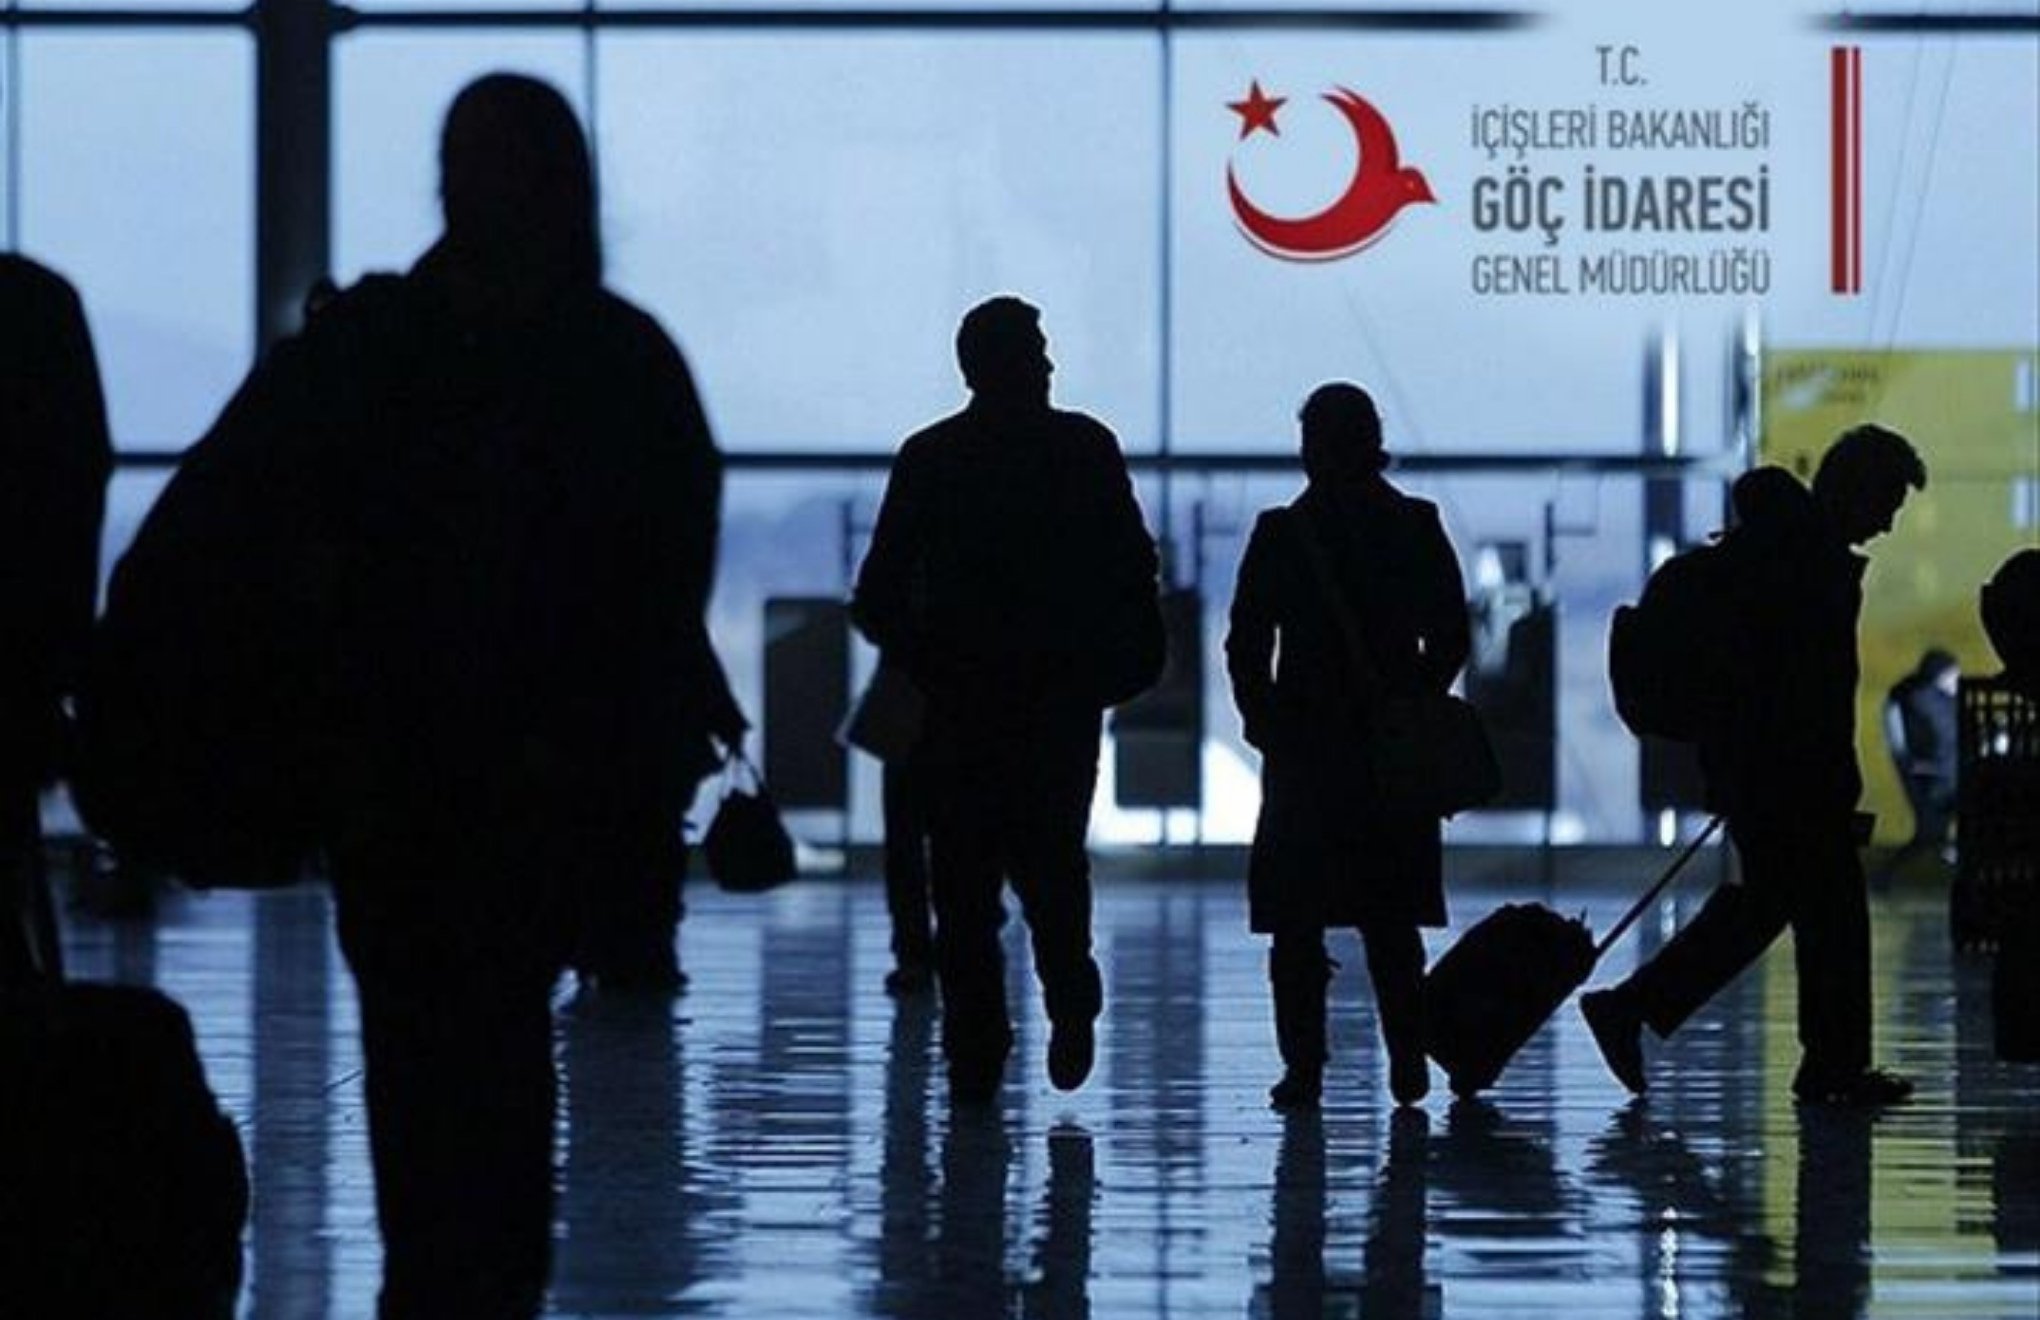 Göç İdaresi: Ankara yeni sığınmacı kaydına kapatıldı